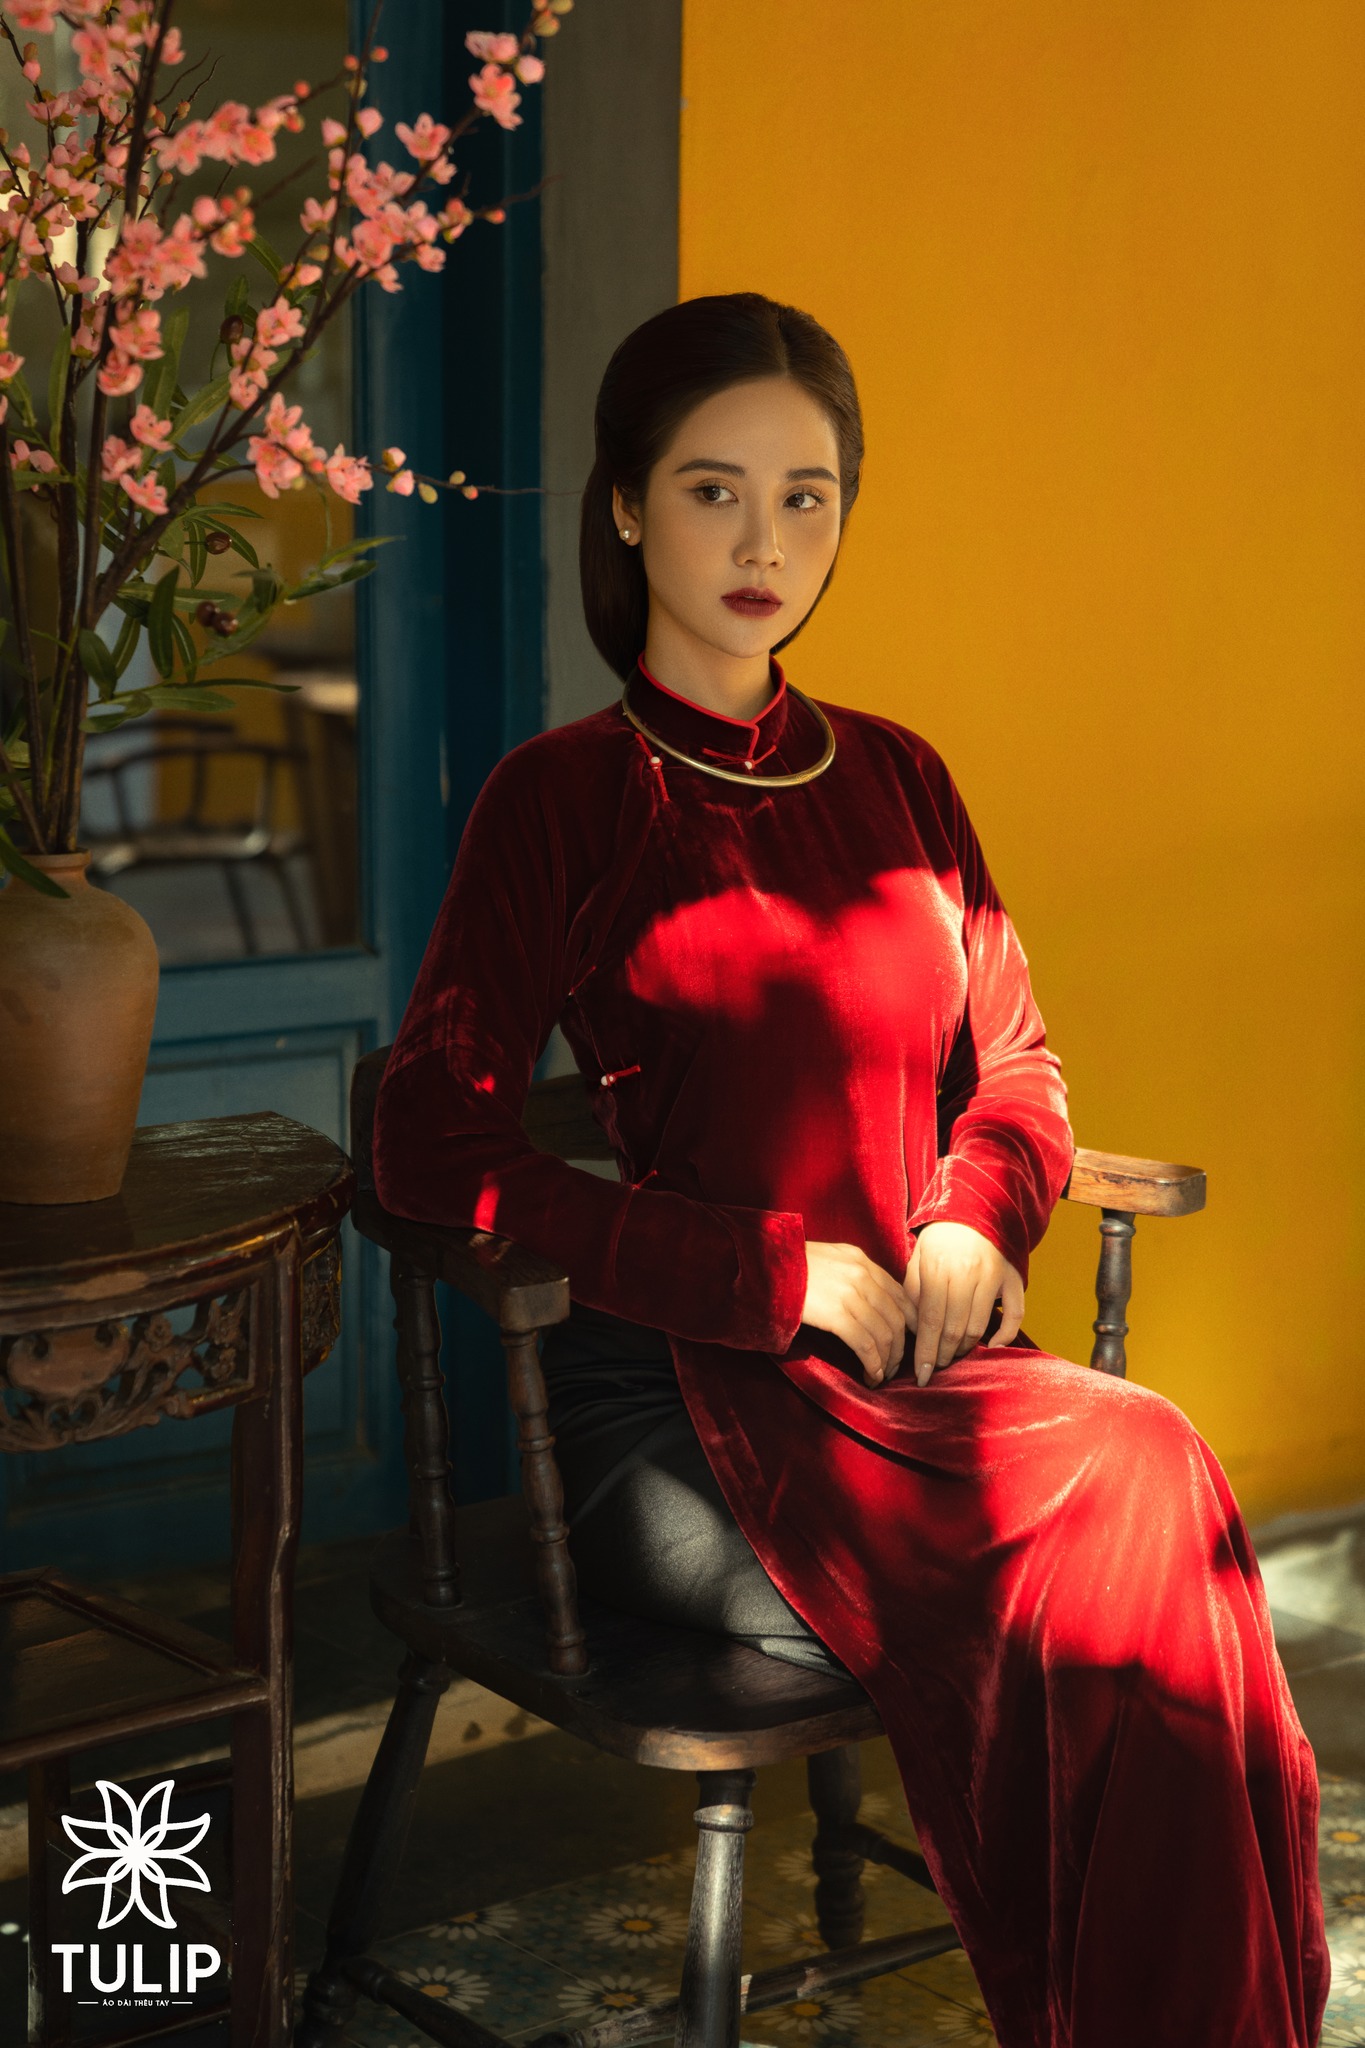 Áo dài Tết: Đón Tết Nguyên Đán với áo dài truyền thống vô cùng đẹp mắt và tinh tế. Những bộ áo dài Tết mang đầy ý nghĩa của dân tộc Việt Nam sẽ khiến bạn tự tin trên mọi bức hình và mang đến một không khí Tết ấm áp cho gia đình và bạn bè.